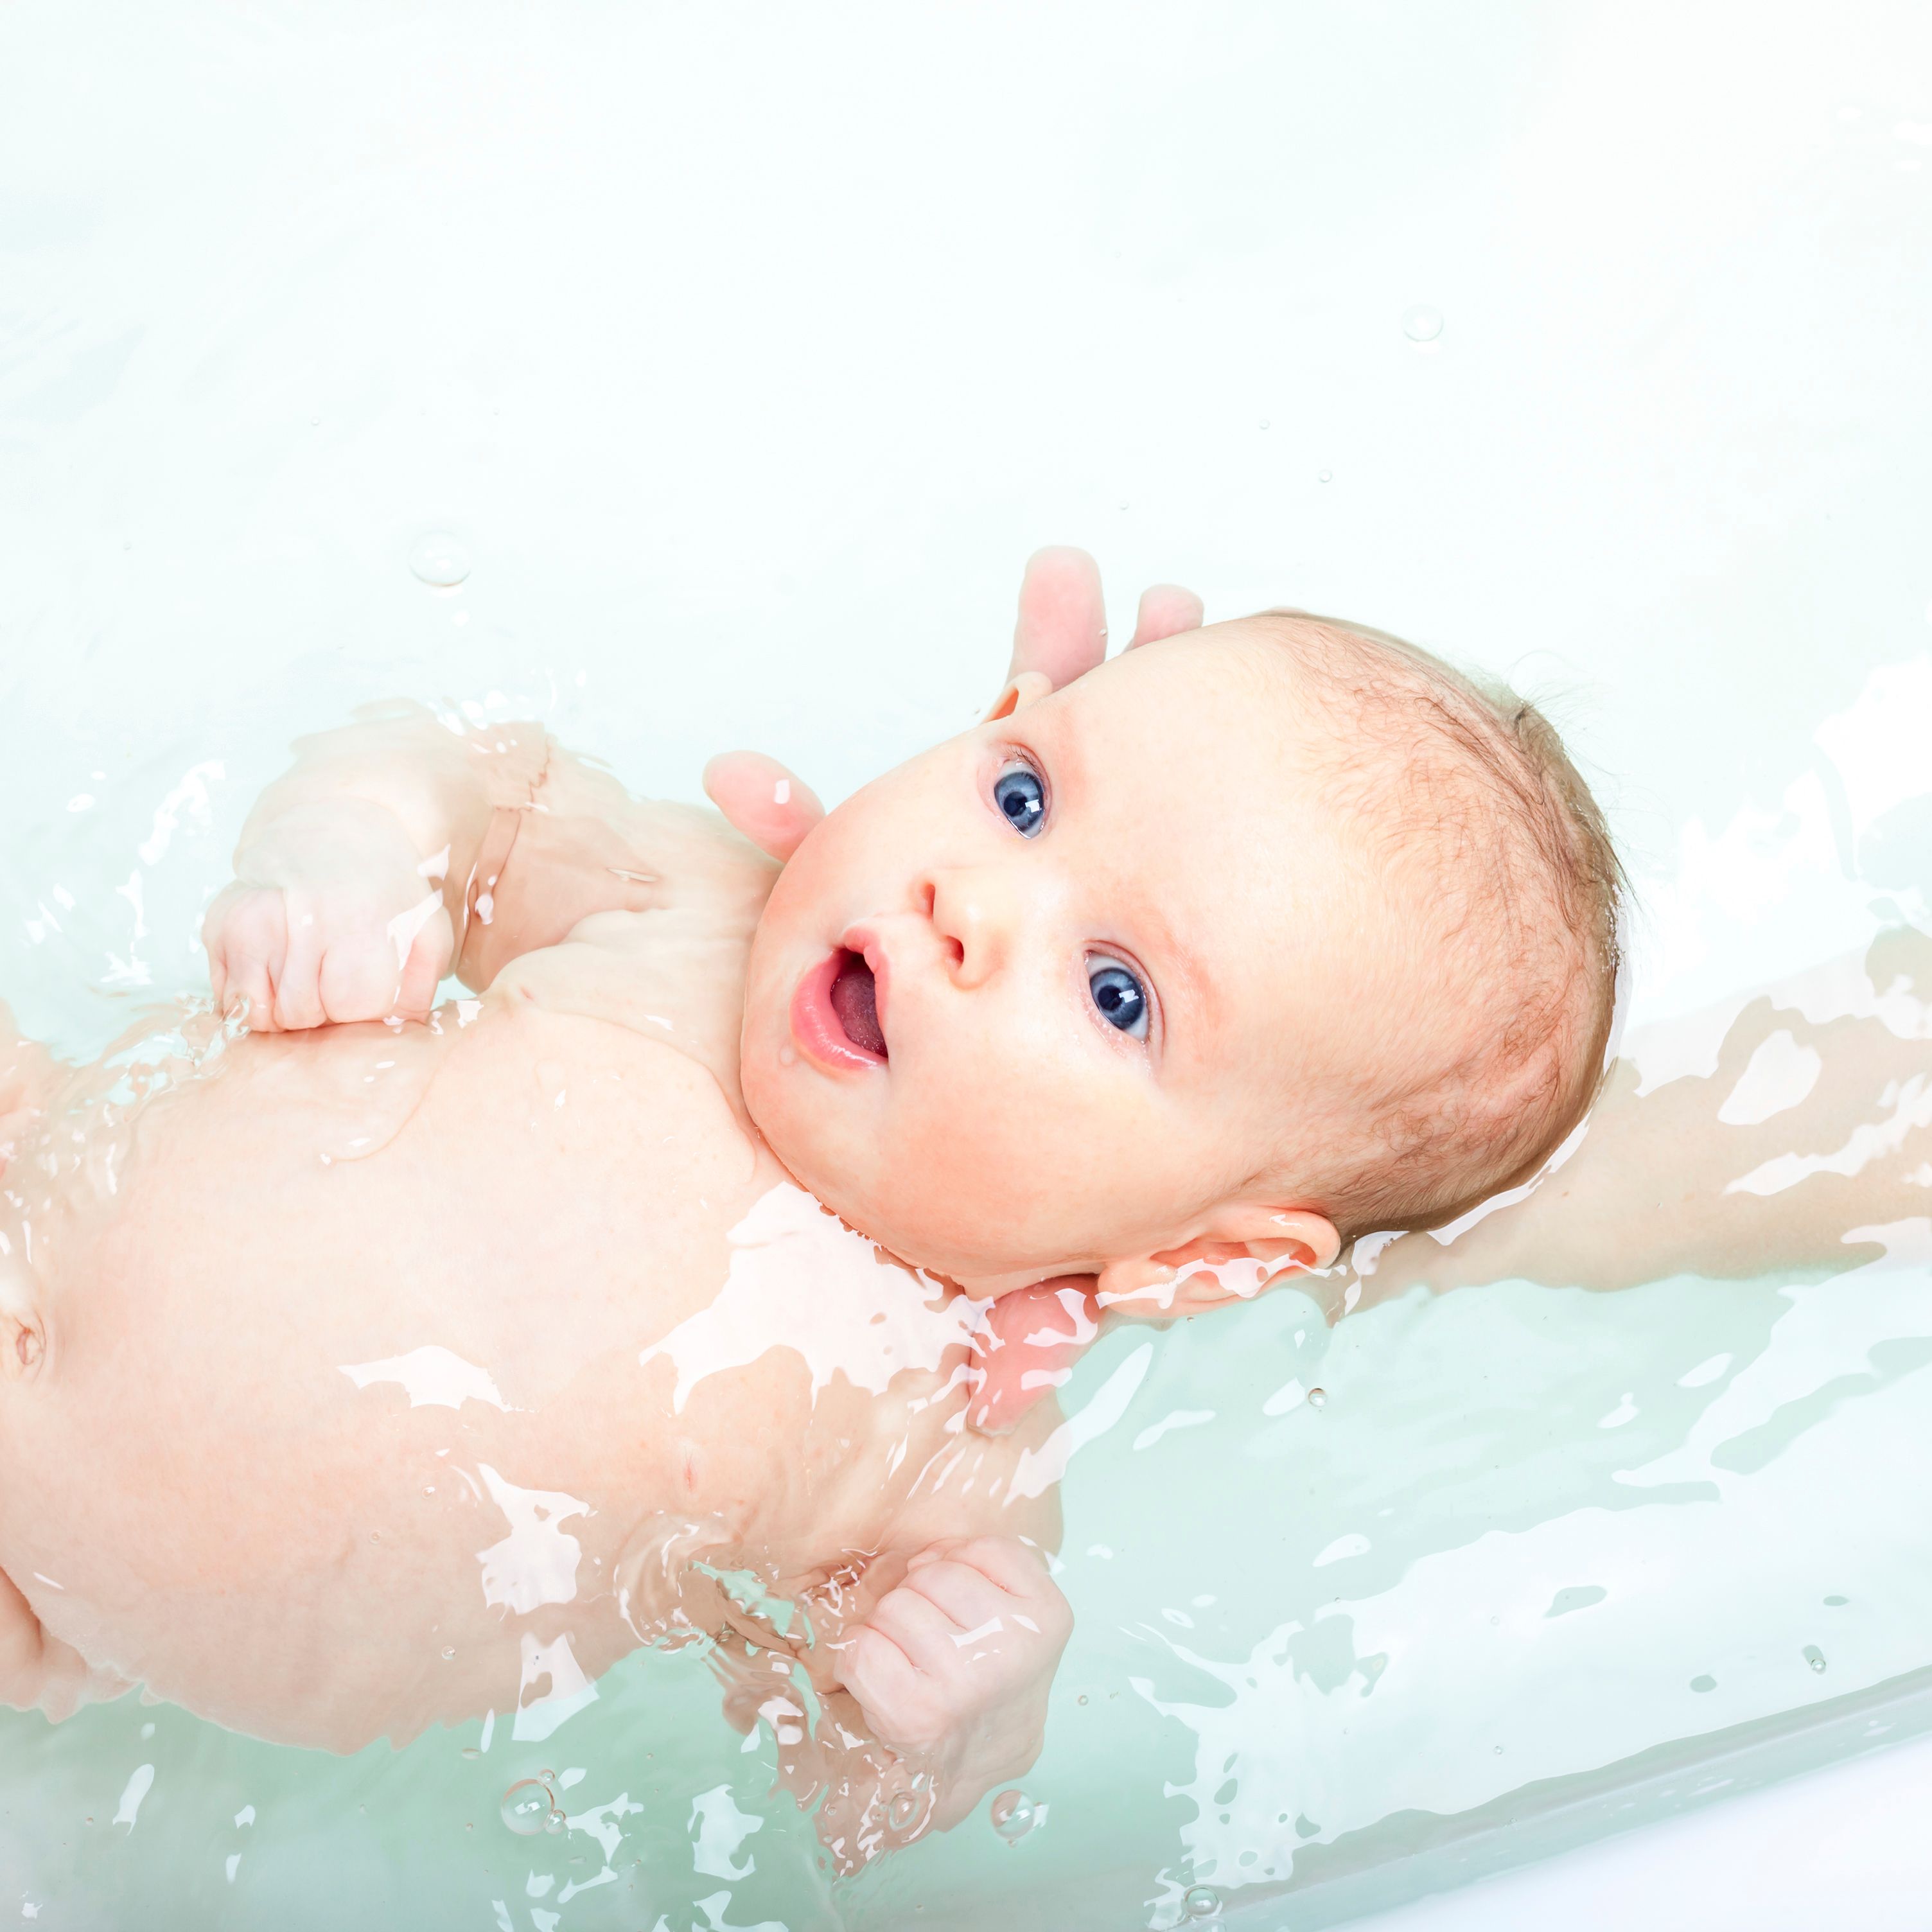 Choisir les produits d'hygiène de bébé : nos conseils